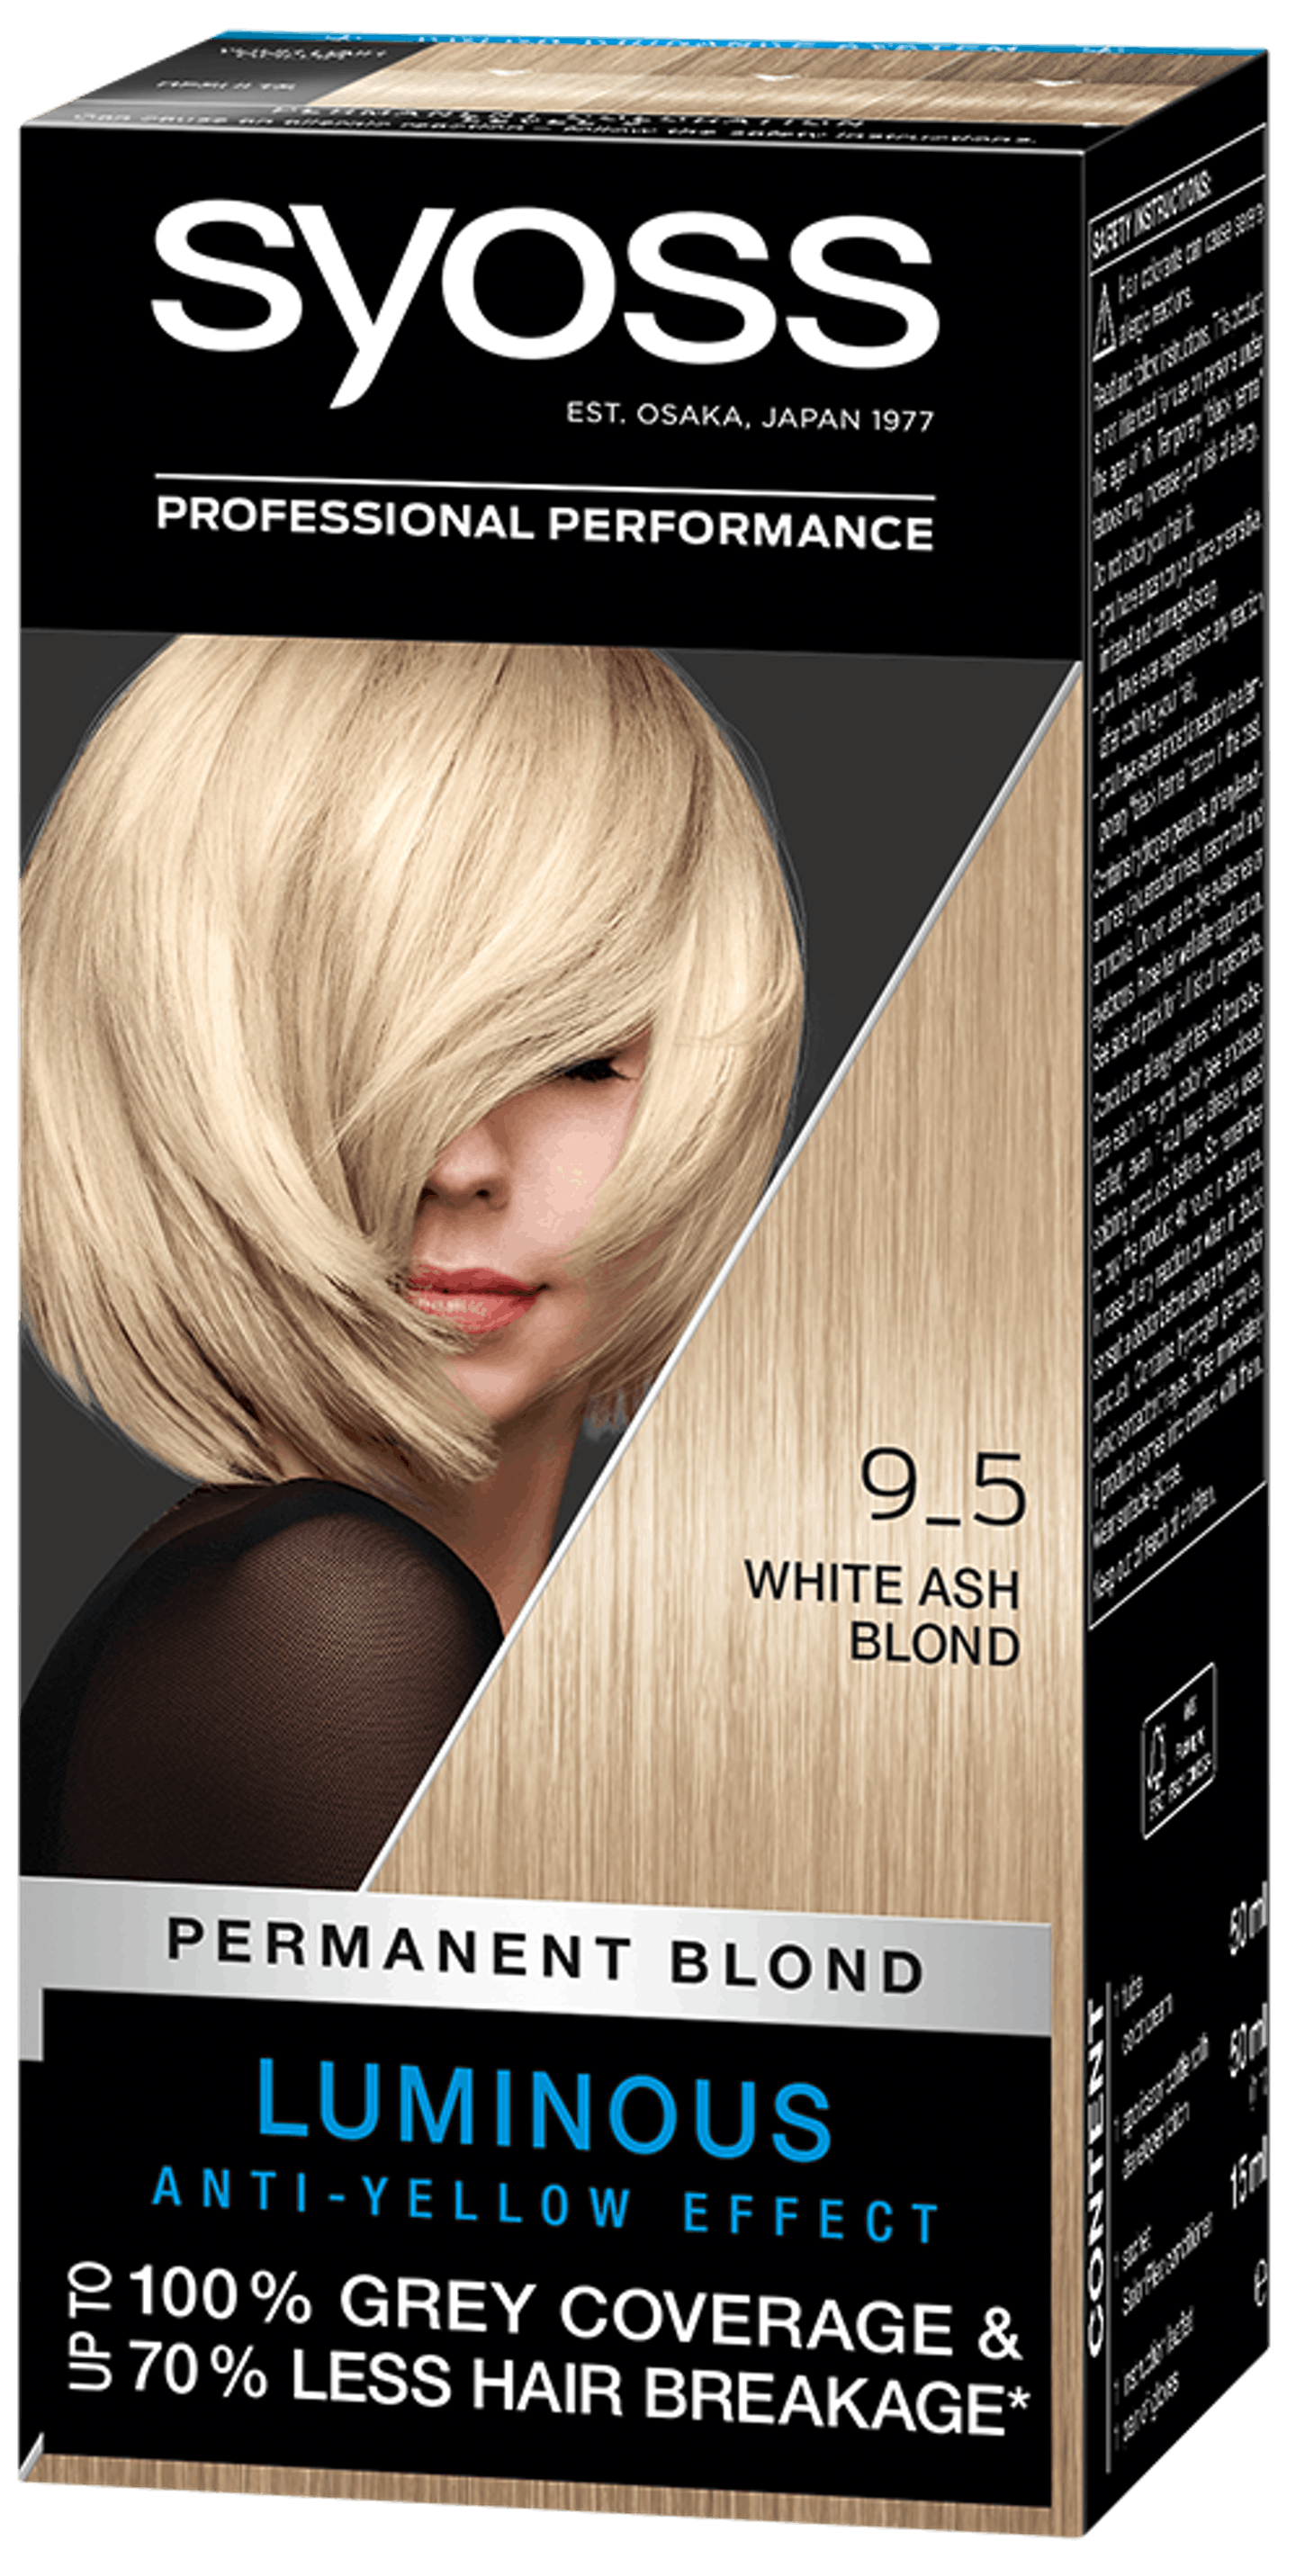 Với bảng màu thuốc nhuộm tóc Syoss, bạn có thể tận dụng một trong những bảng màu đa dạng nhất để tìm kiếm phong cách tóc mới mẻ dành riêng cho bạn. Khám phá và lựa chọn màu sắc yêu thích của bạn với bảng màu thuốc nhuộm tóc Syoss.